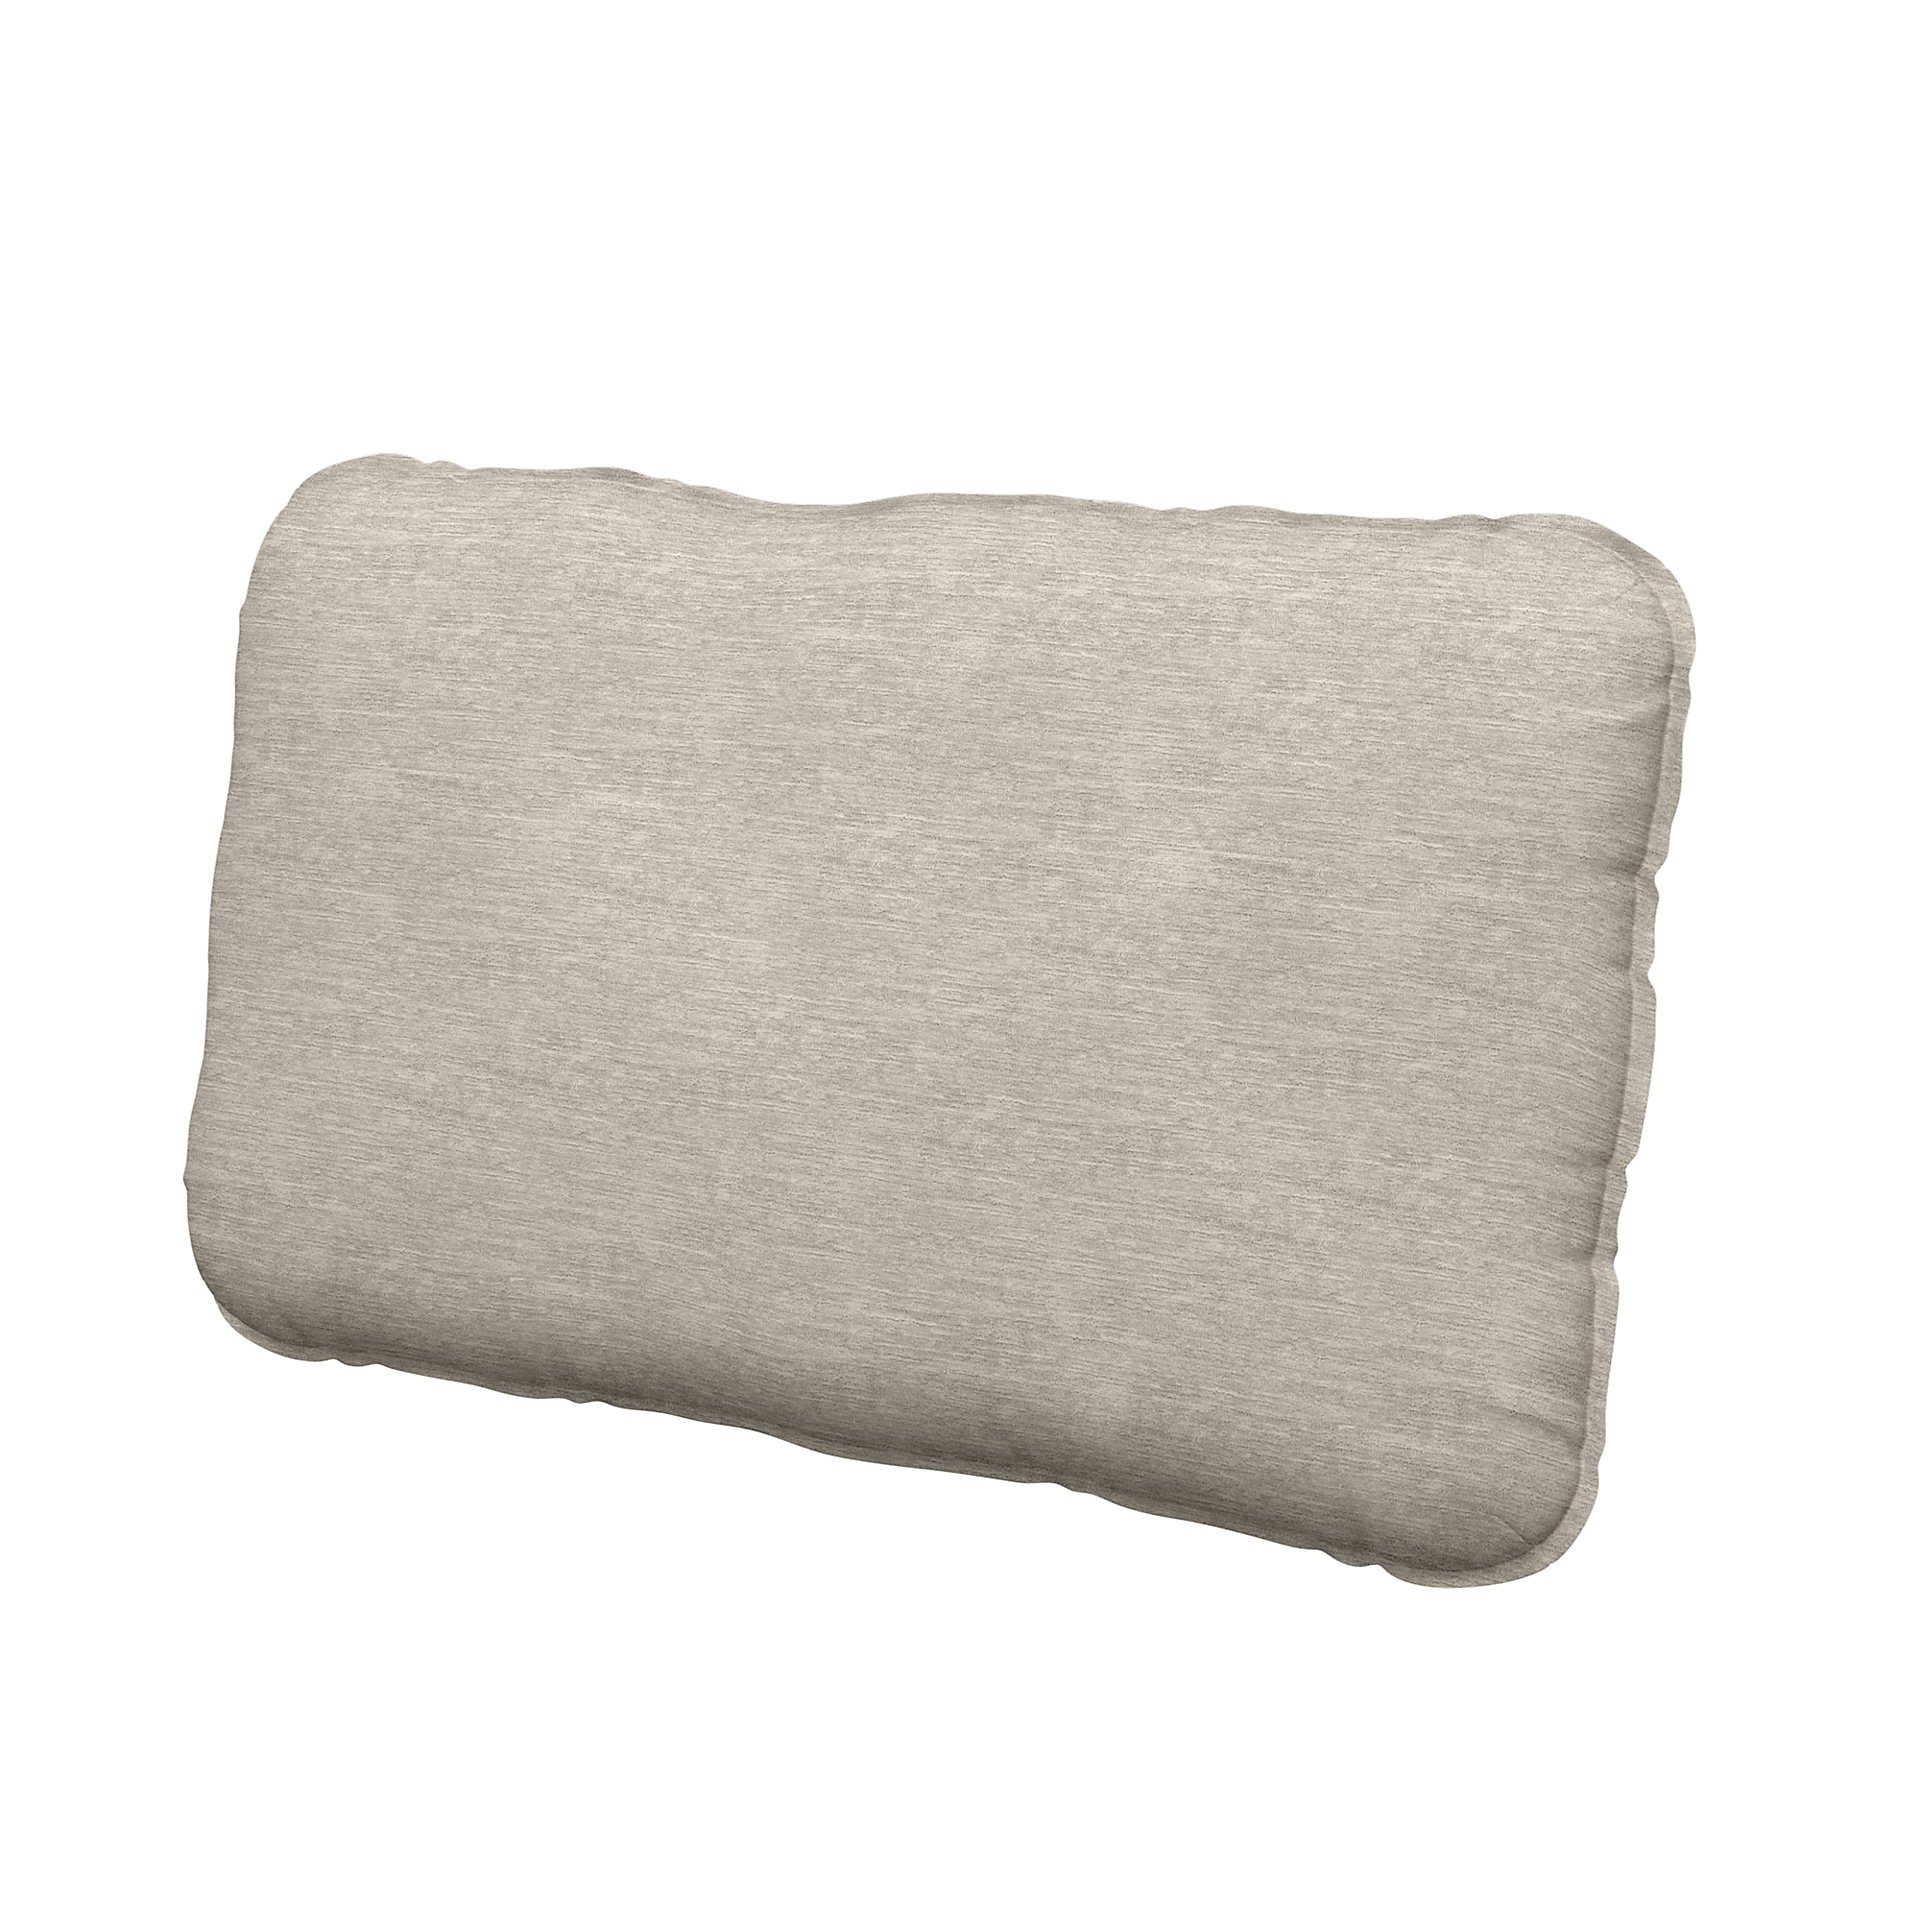 IKEA - Vallentuna back cushion cover 40x75cm, Natural White, Velvet - Bemz